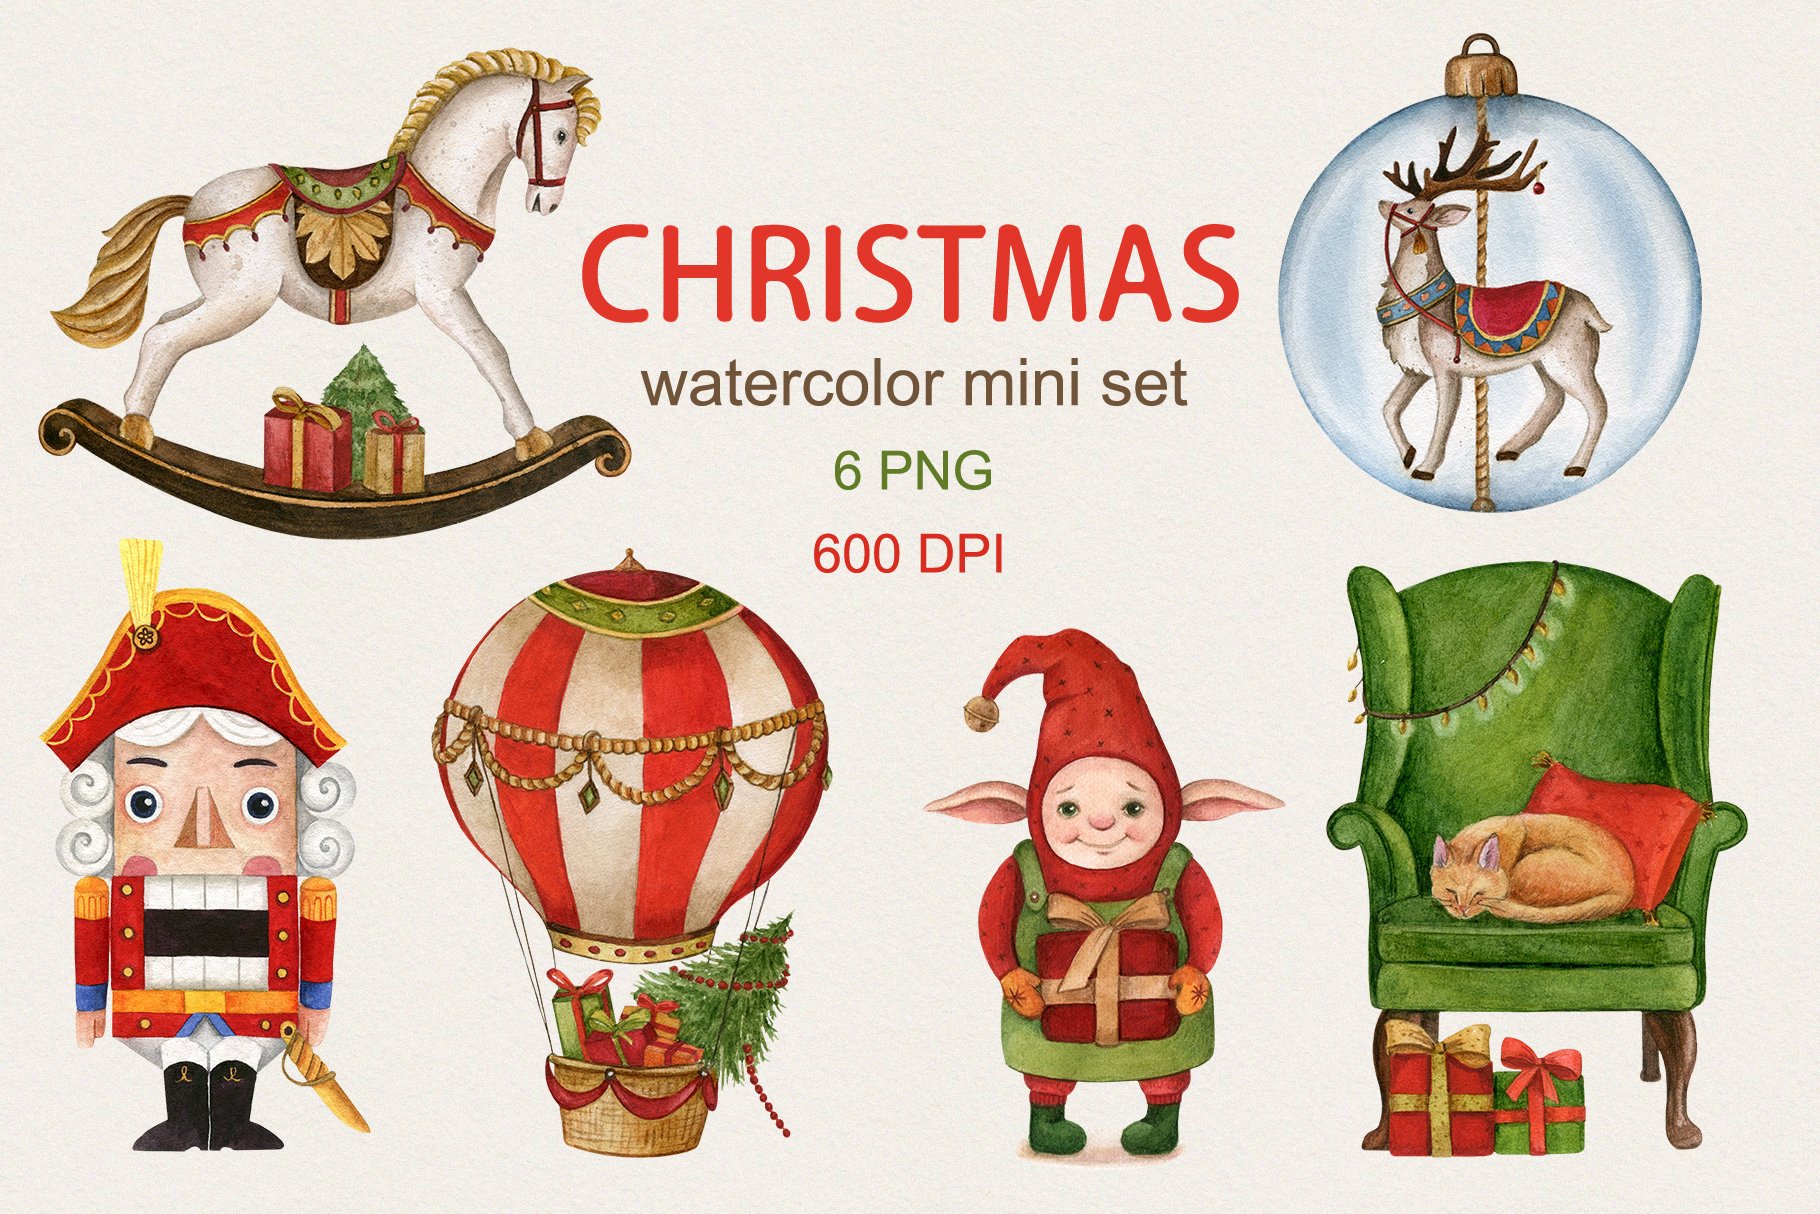 Christmas mini set cover image.